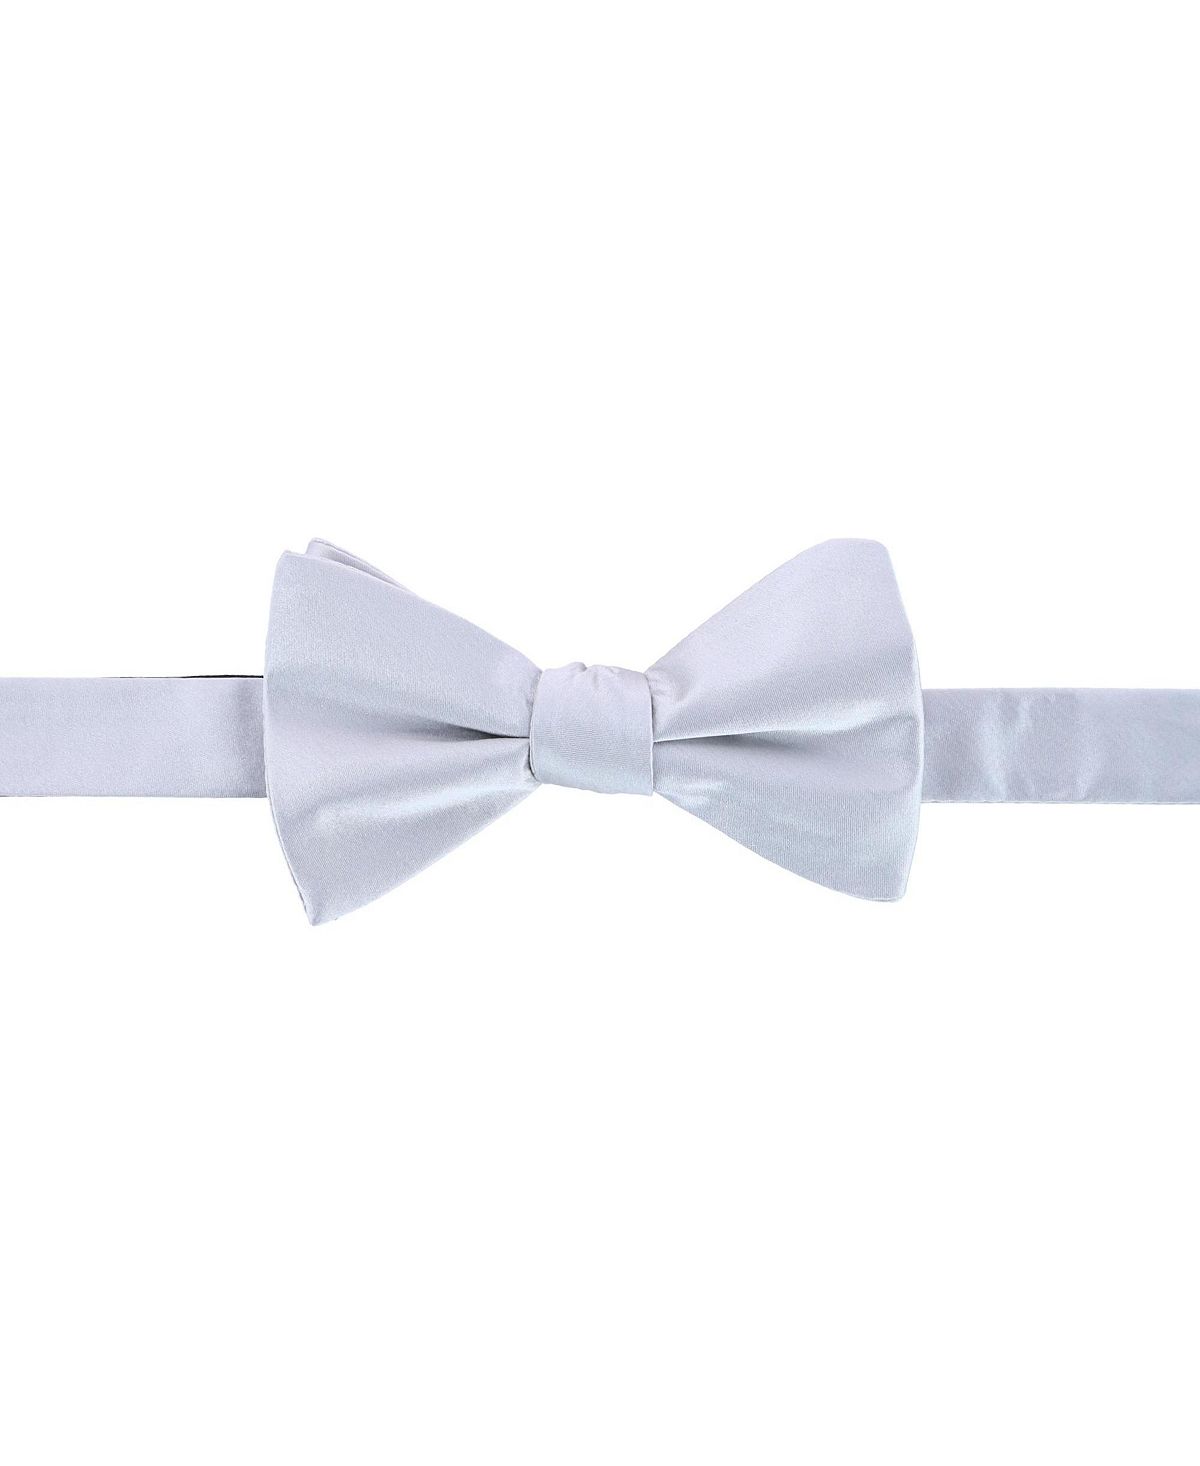 большой галстук бабочка однотонный галстук бабочка для женщин униформа воротник бабочка женский галстук бабочка галстук бабочка для вз Однотонный шелковый галстук-бабочка Sutton TRAFALGAR